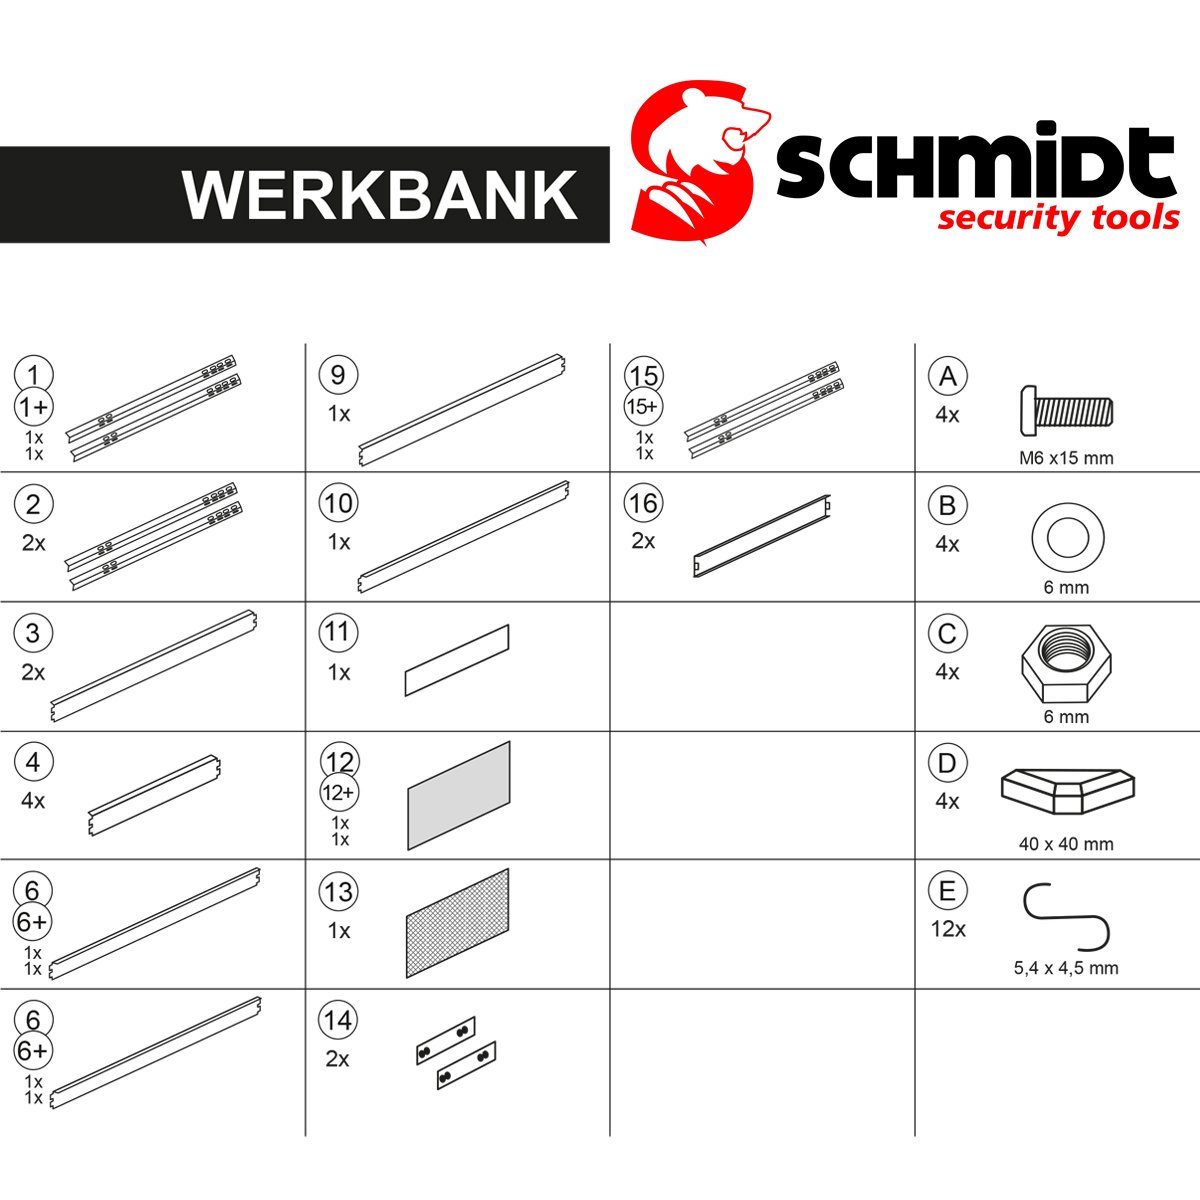 Lochwand Werktisch Arbeitstisch Werkbank 140x90x48cm SCHMIDT tools Werkzeugwand Werkzeugbank security